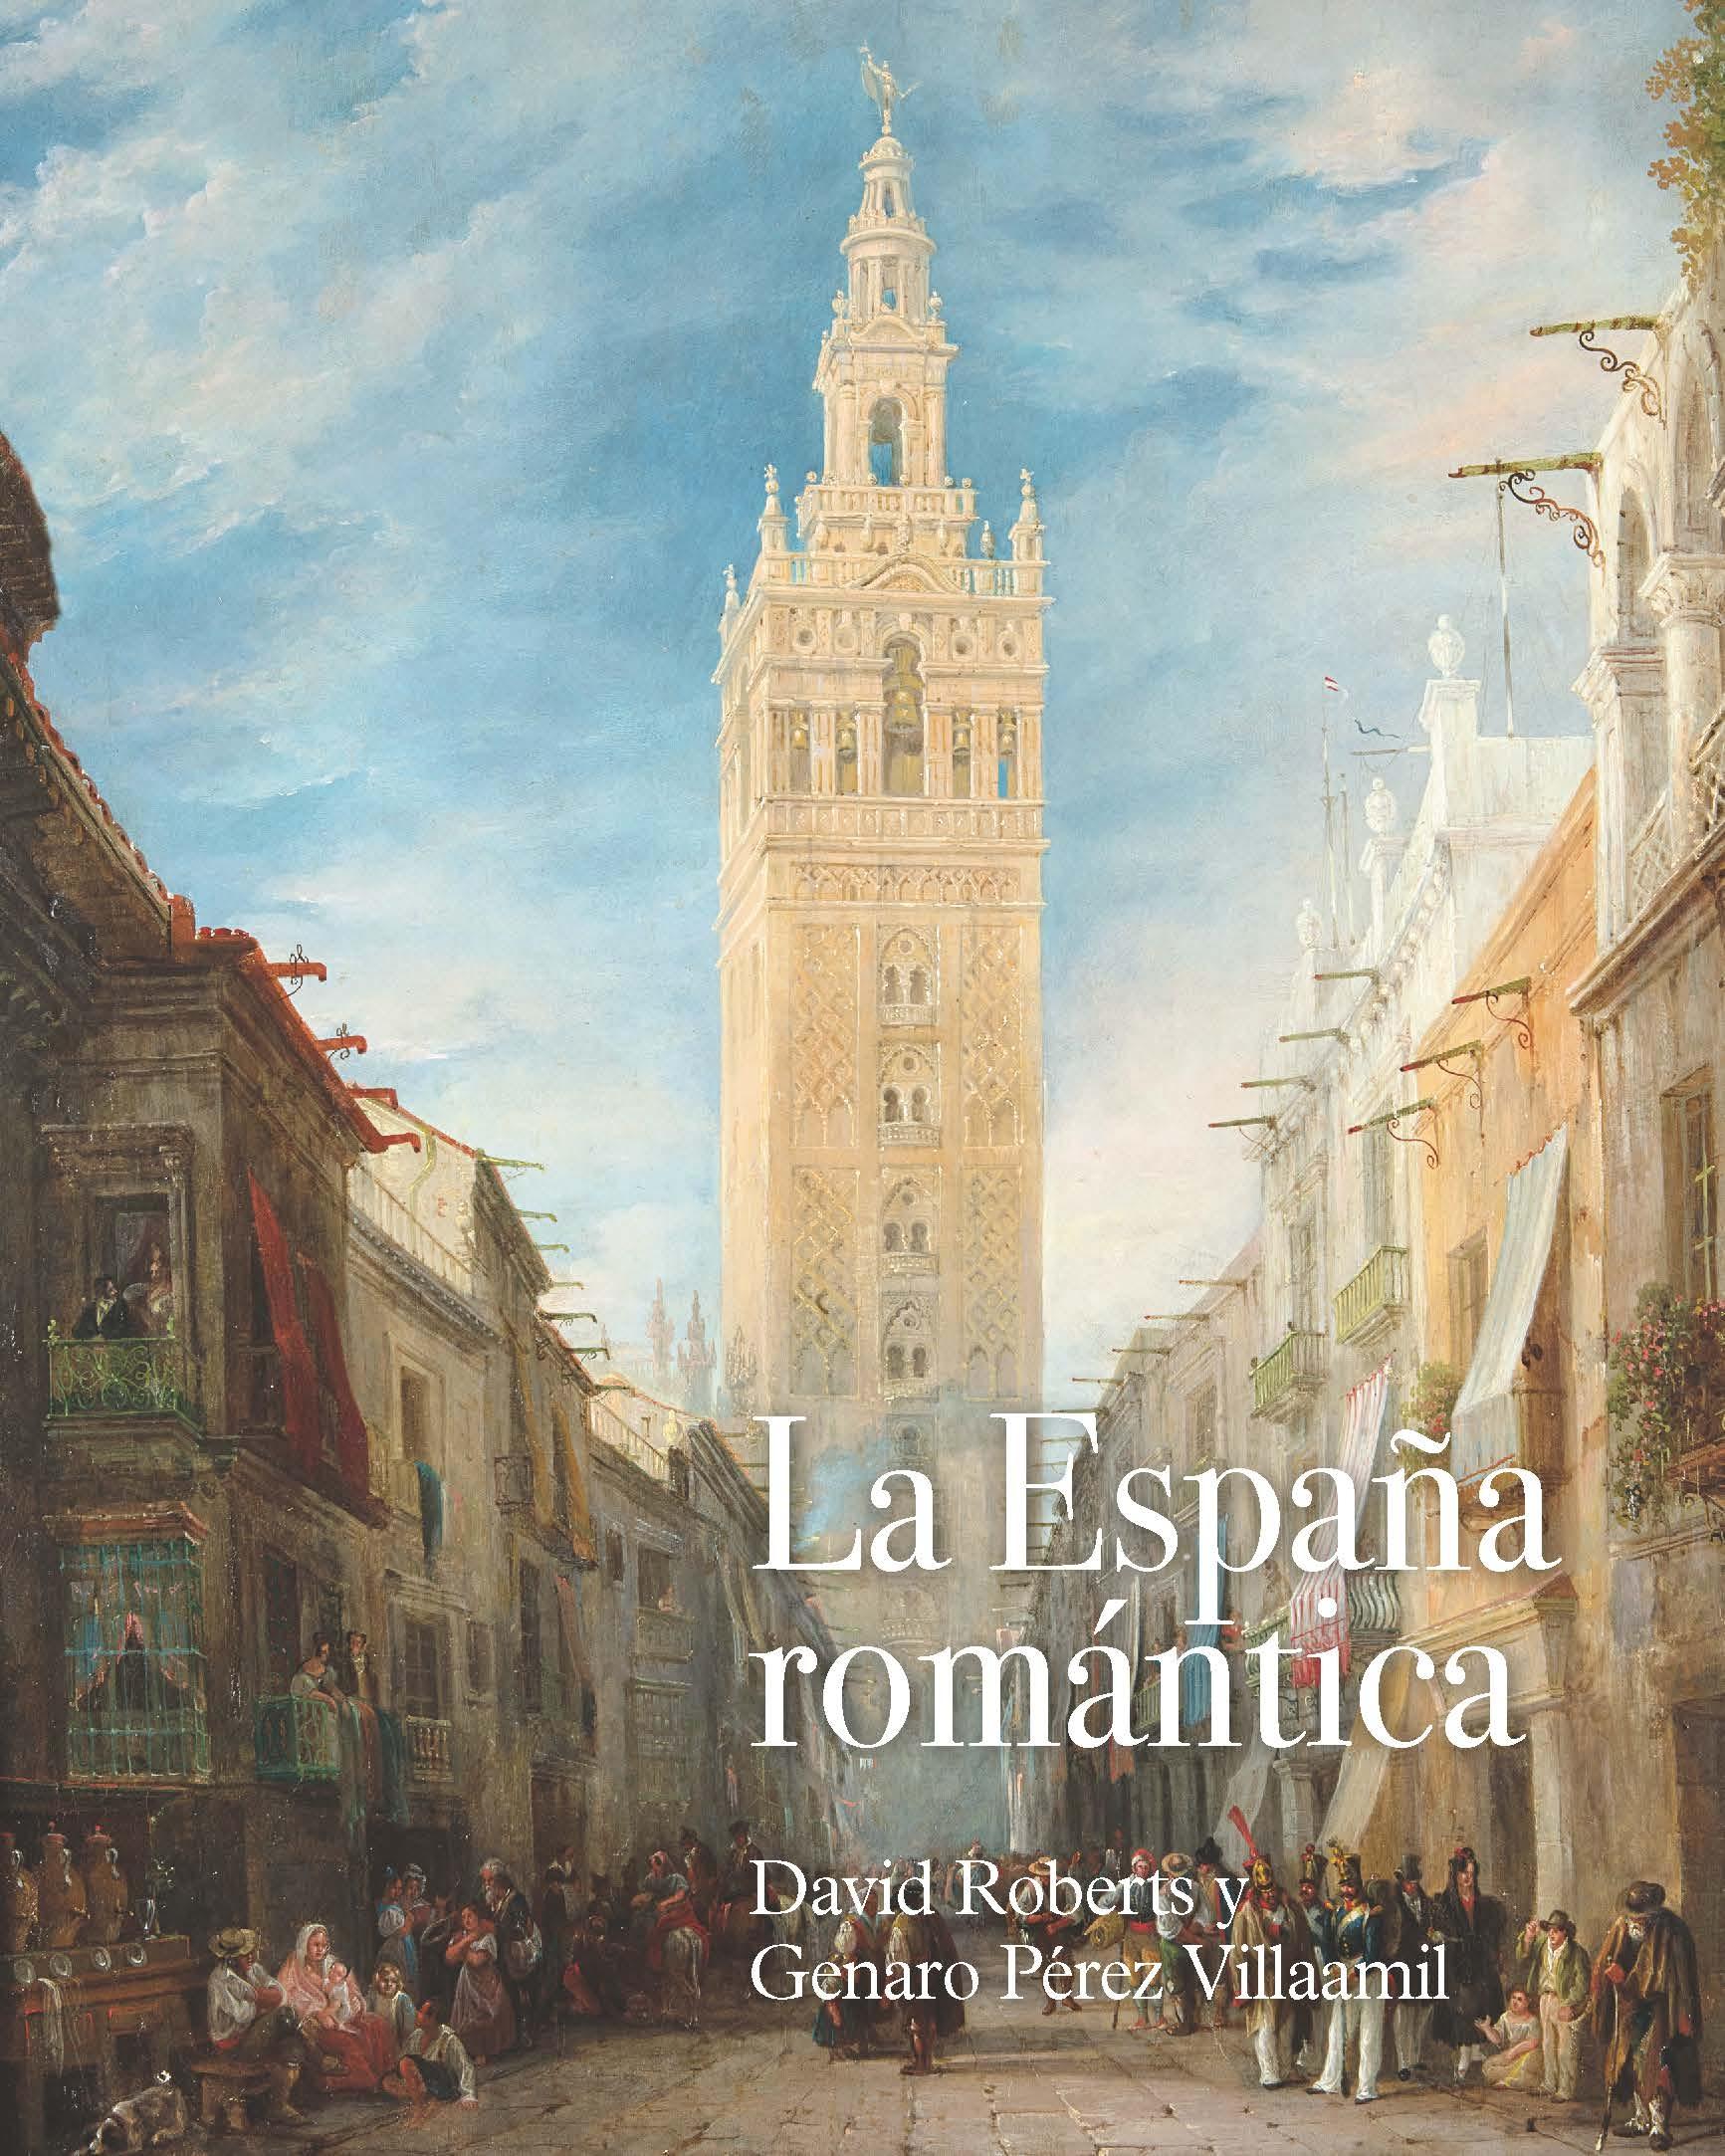 La España Romántica: David Roberts y Genaro Pérez Villaamil. 